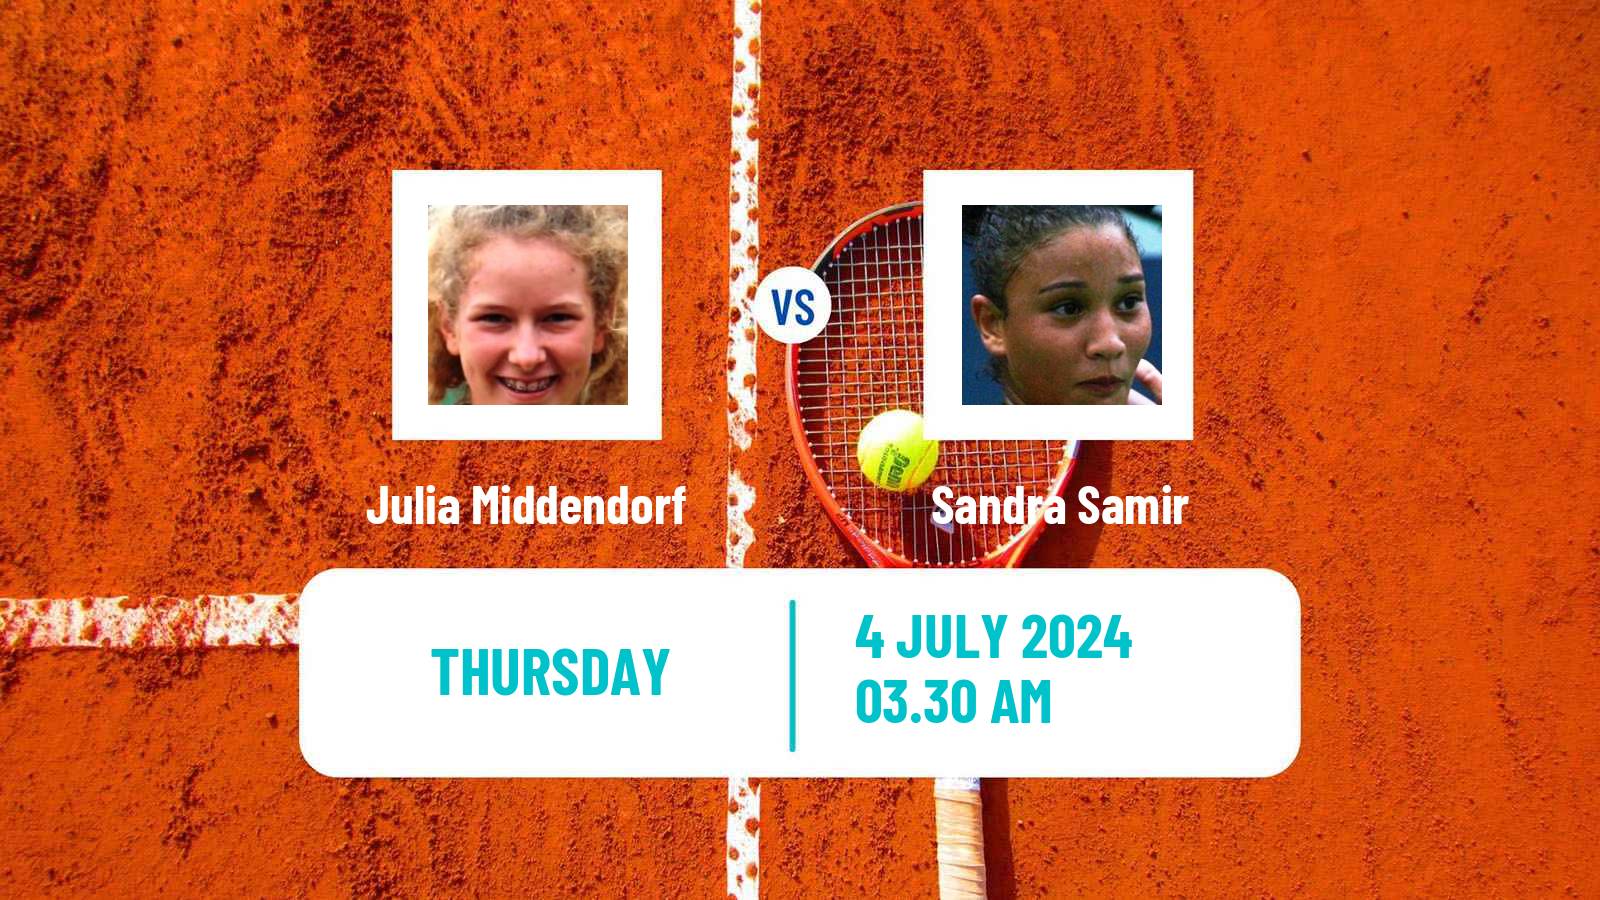 Tennis ITF W35 Stuttgart Vaihingen Women Julia Middendorf - Sandra Samir